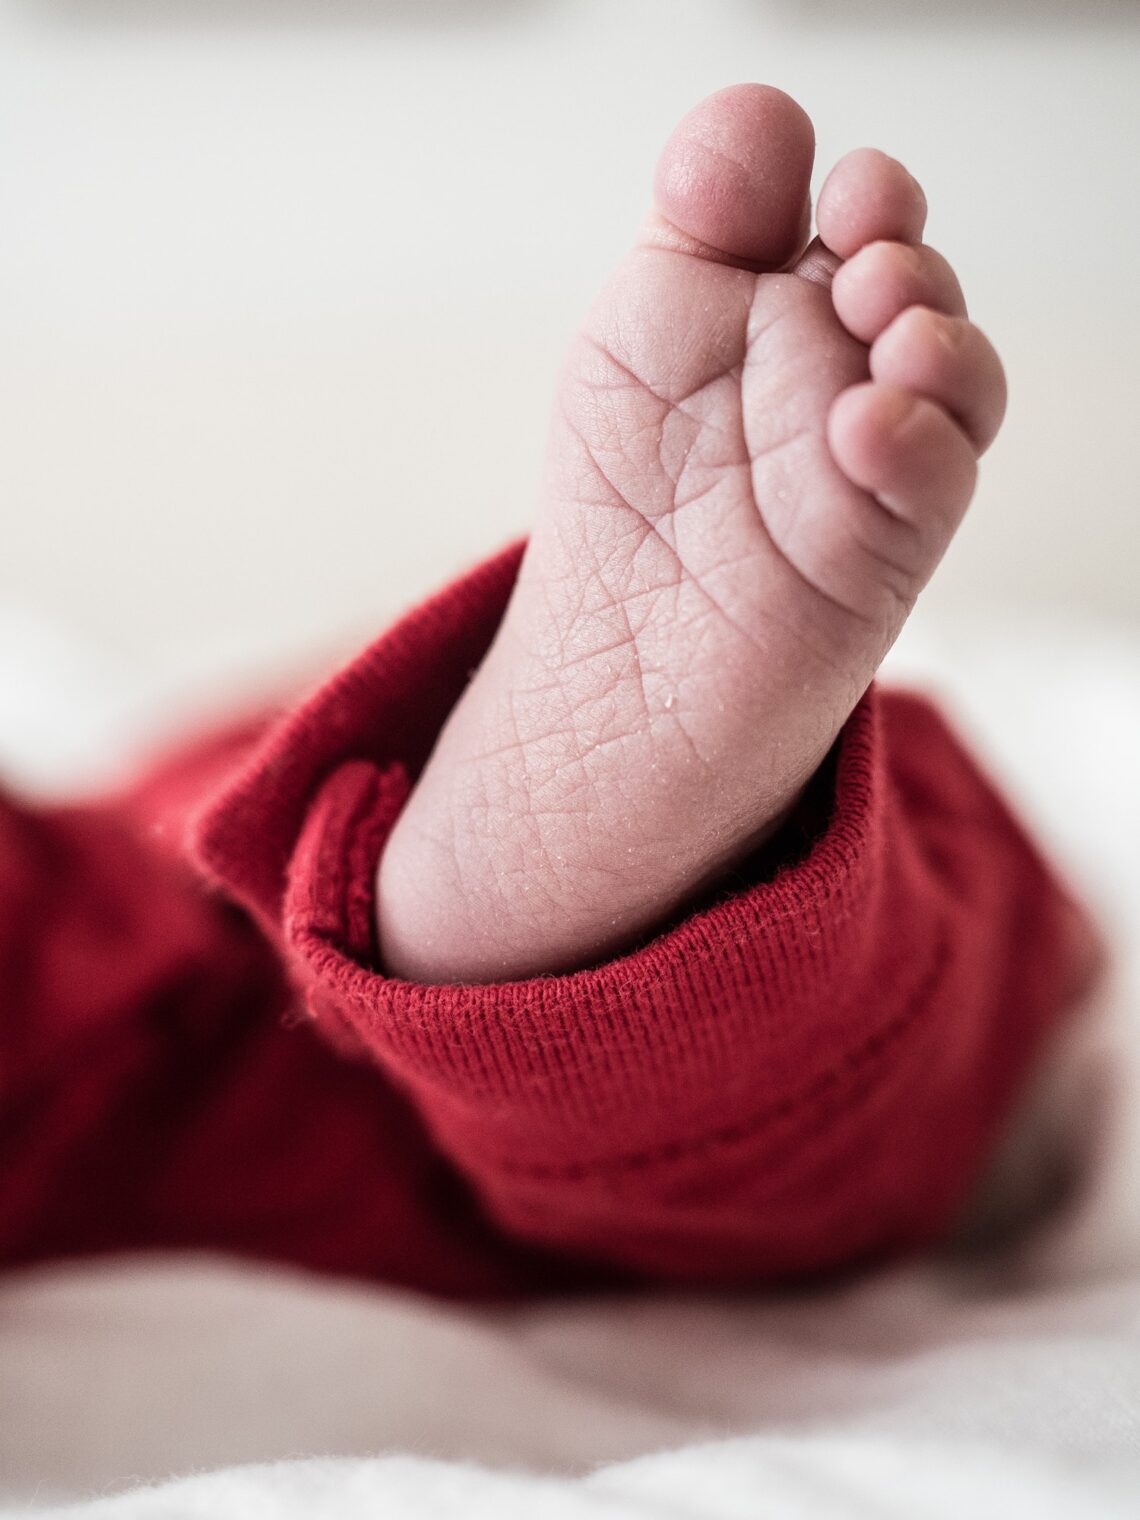 Newborn Baby's Foot